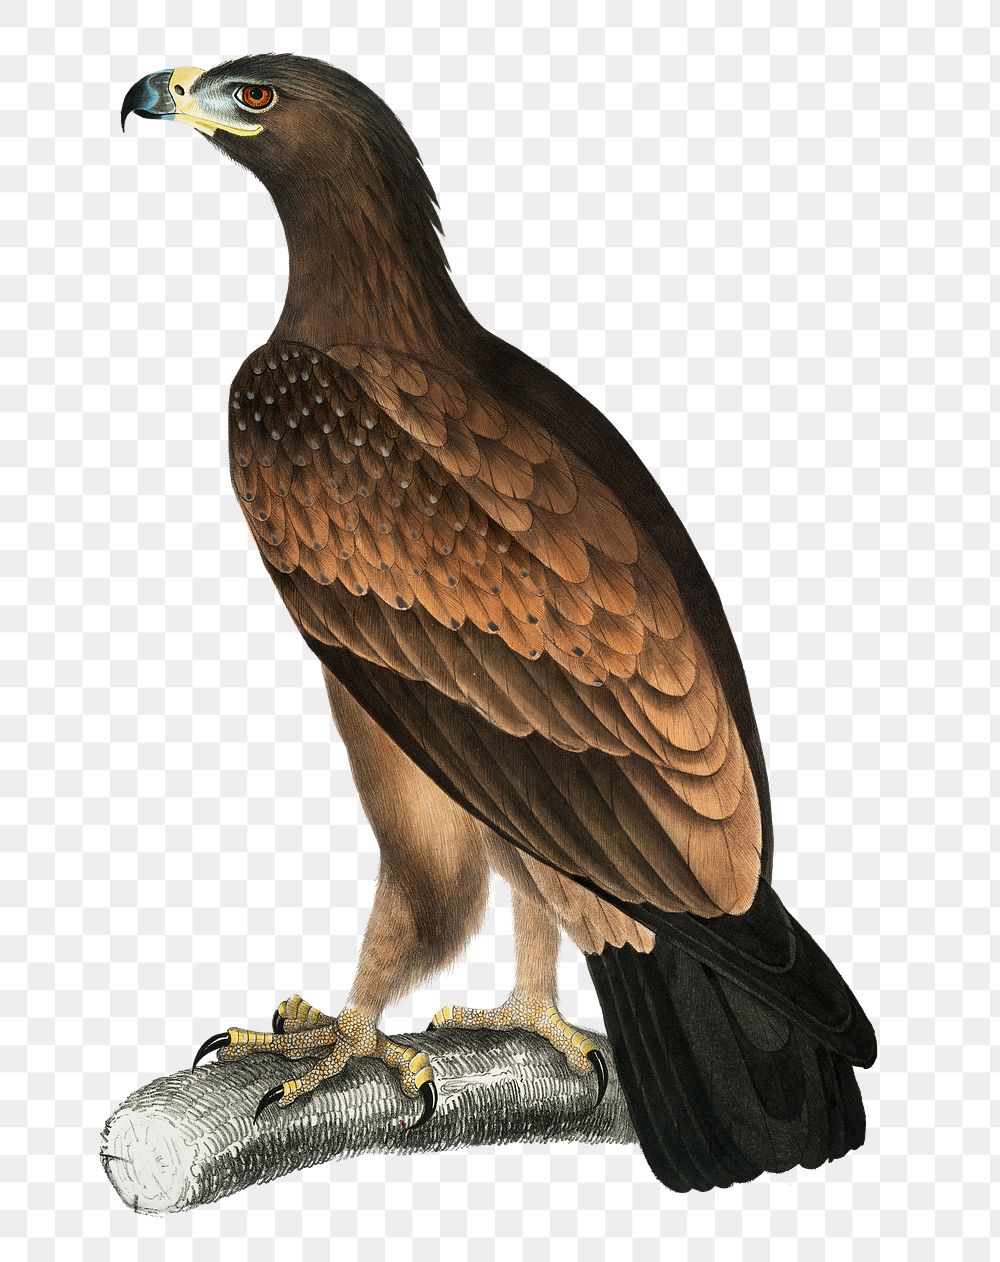 Brown eagle png sticker, vintage bird on transparent background